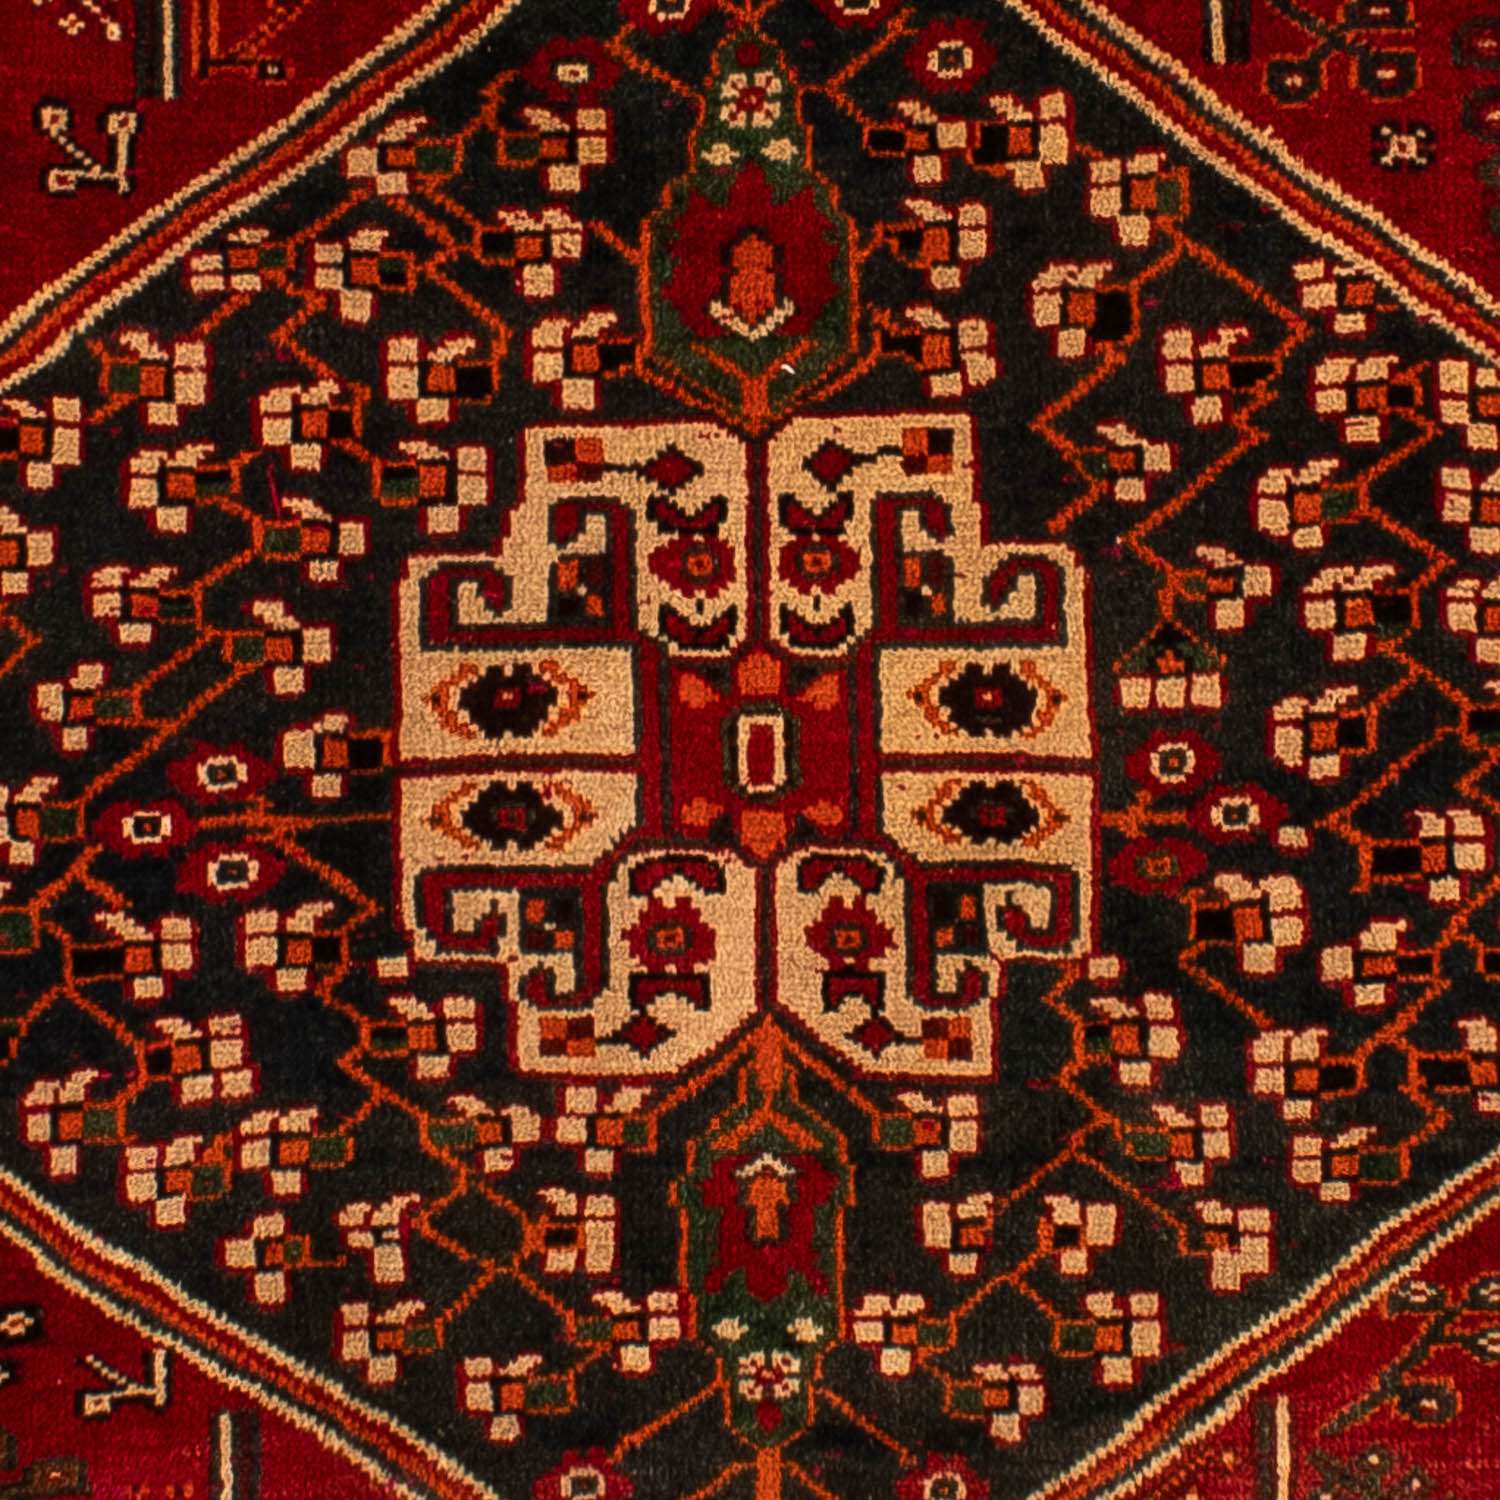 Alfombra persa - Nómada - 305 x 214 cm - rojo oscuro